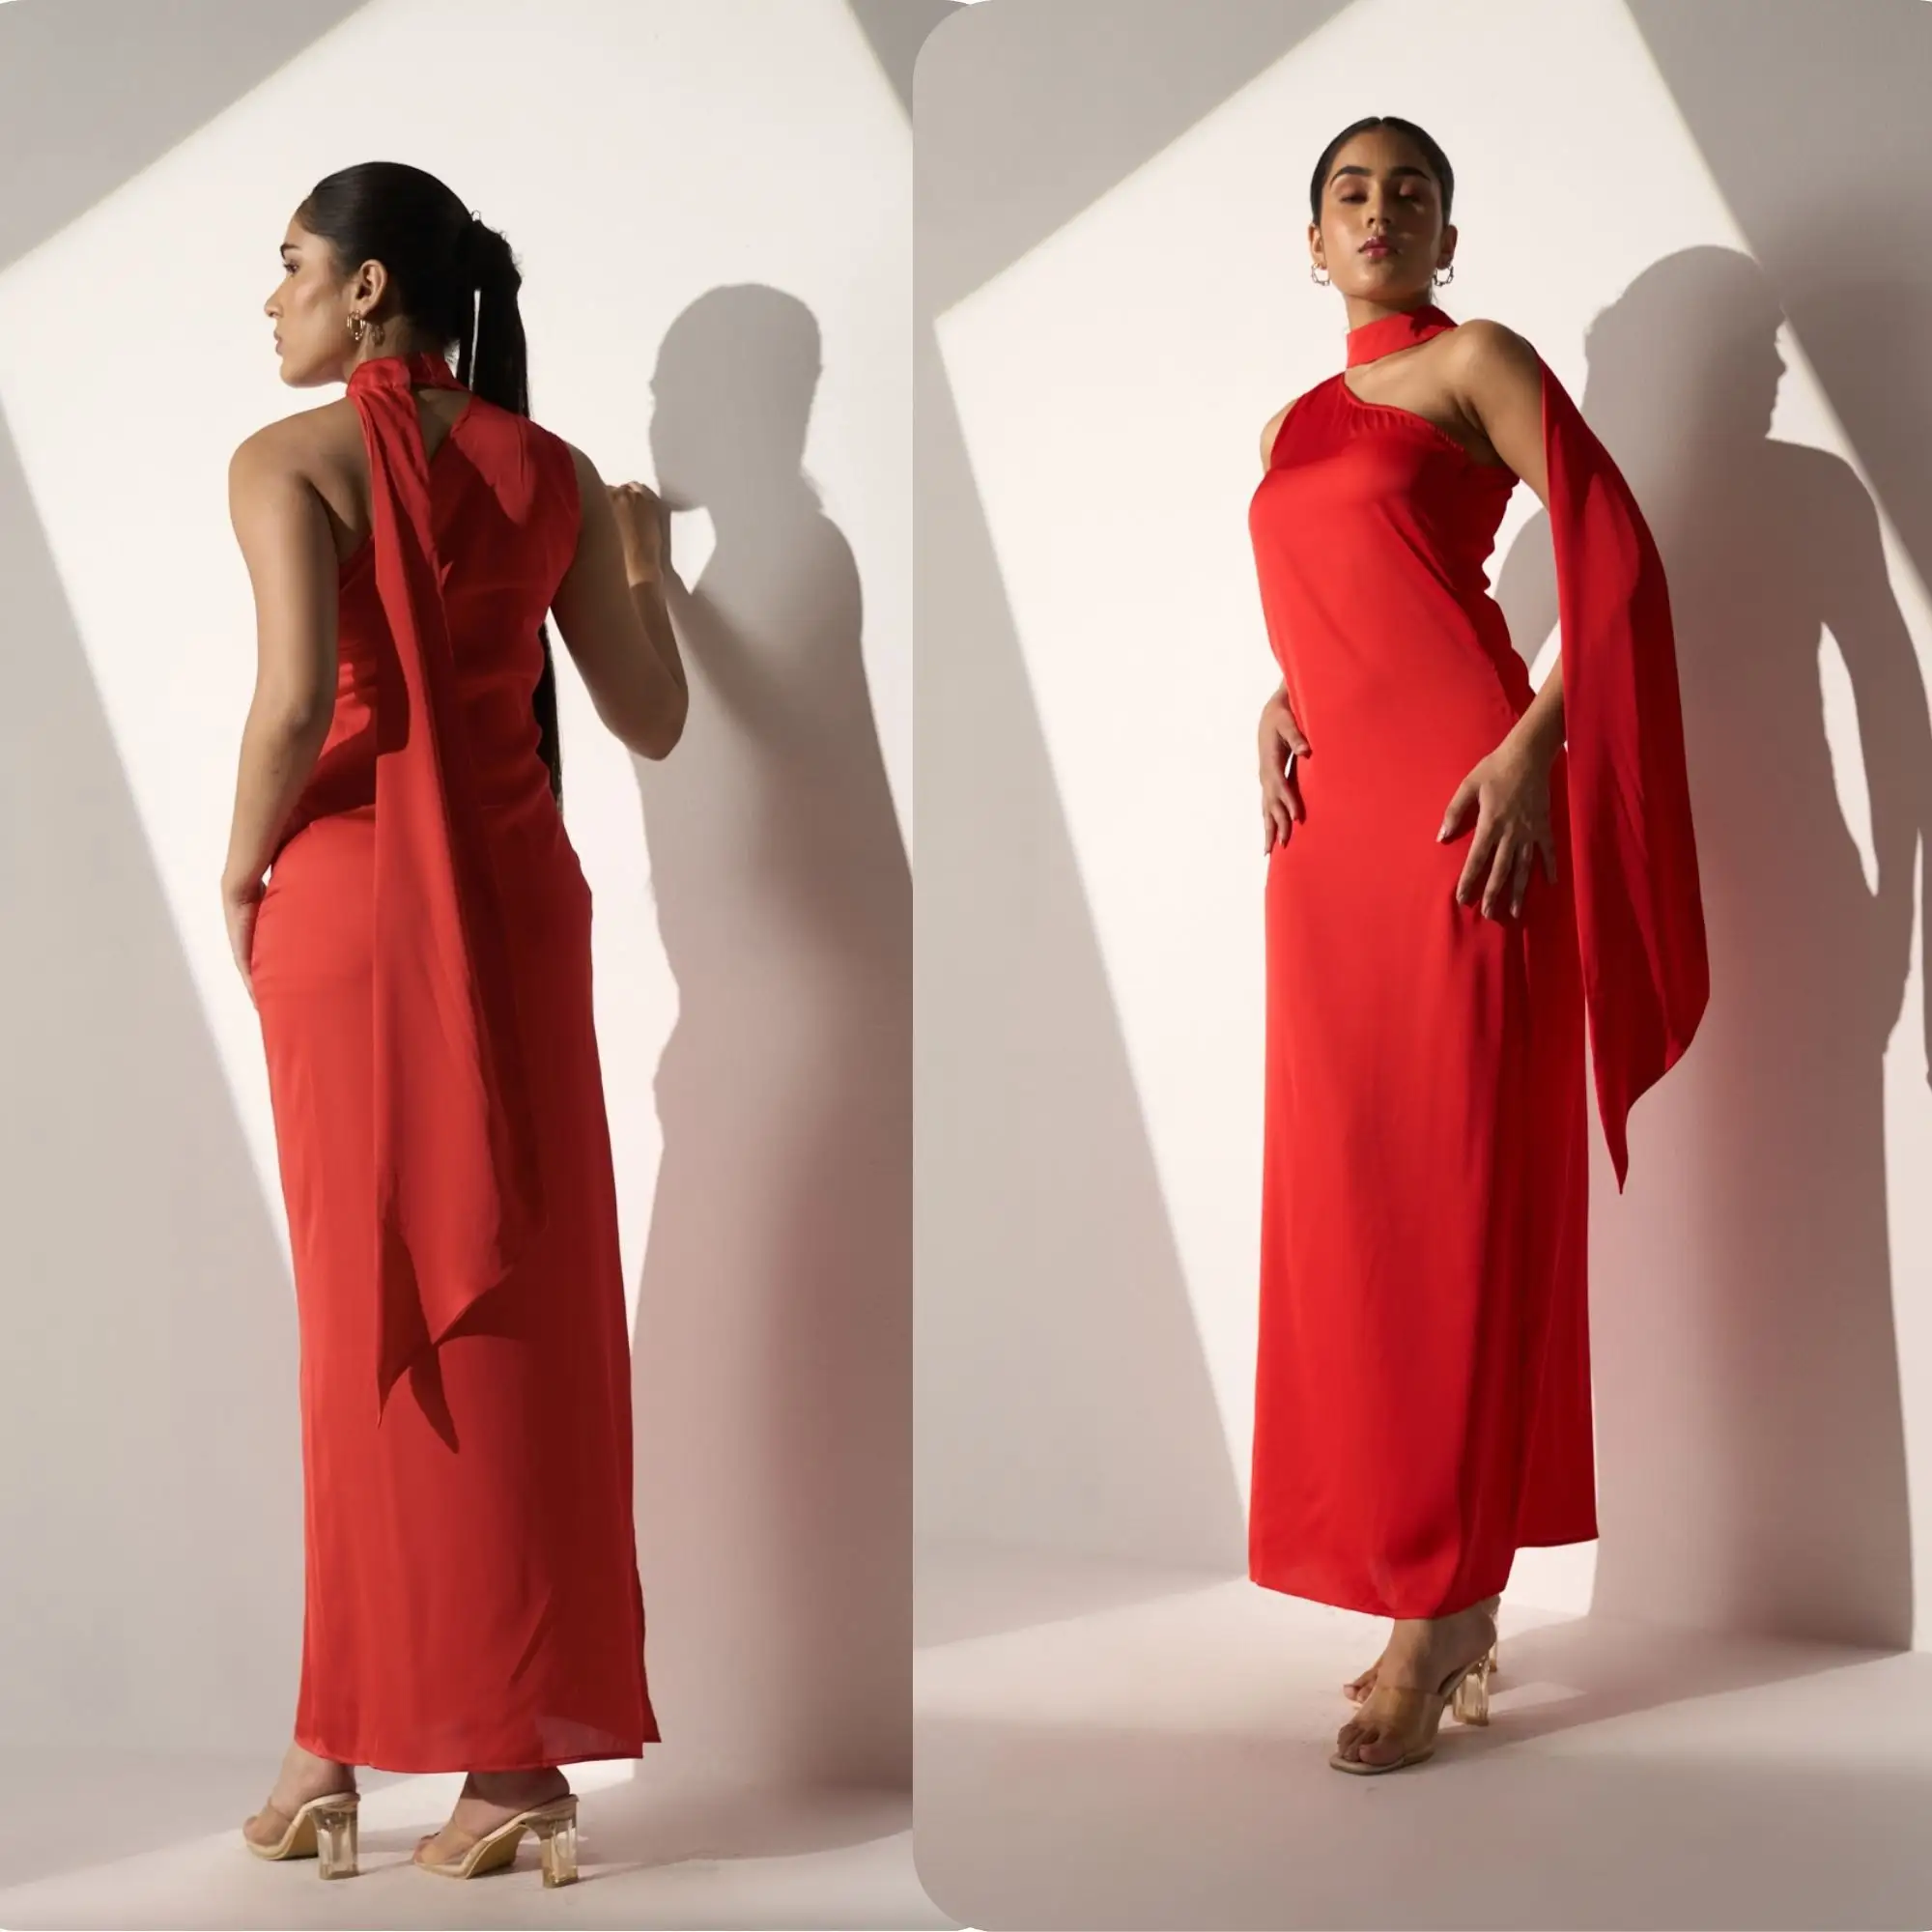 女性用のシックなレッドホルターネックマキシドレス-フォーマルなイベント用のサイドスリット付きのエレガントなイブニングドレス